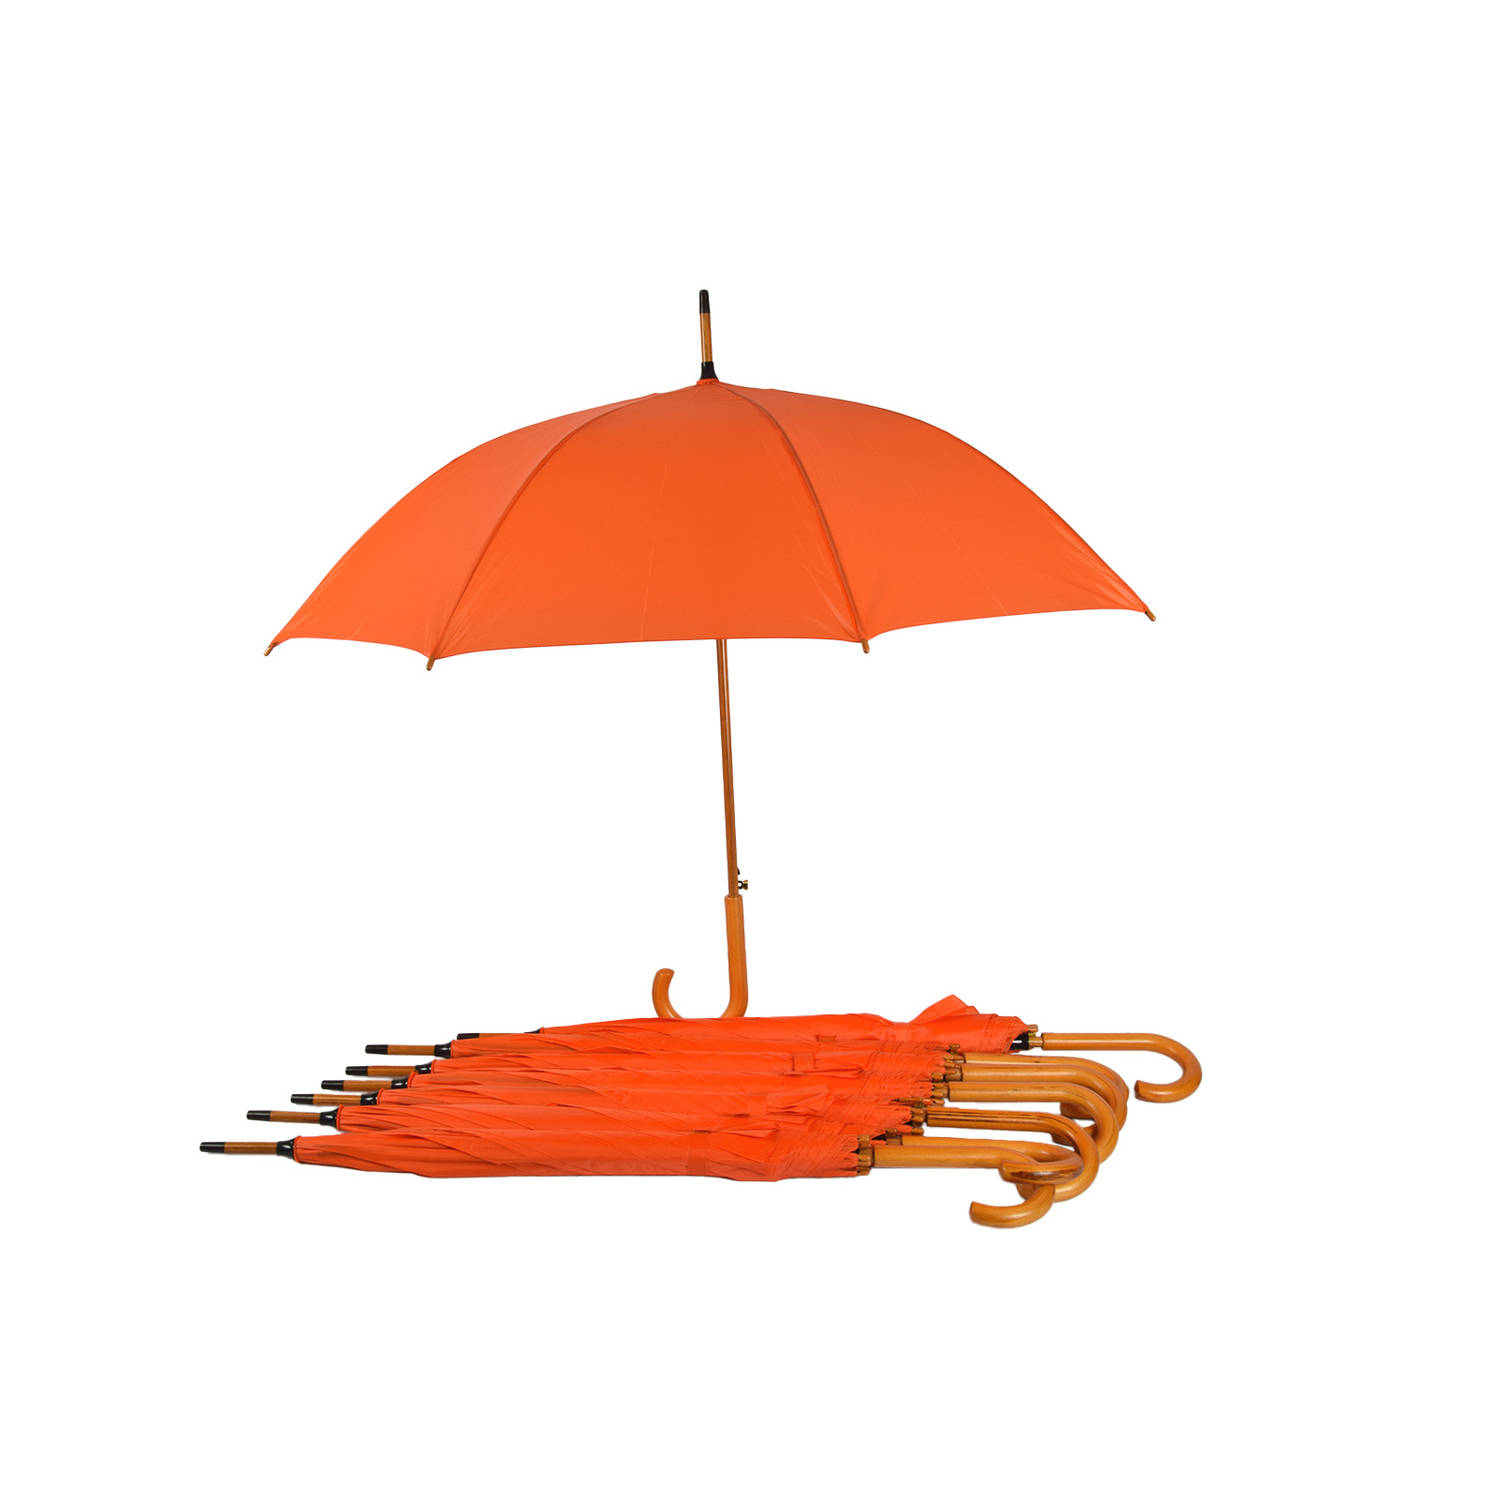 Set van 7 Automatische Paraplu Voor Volwassenen | 102cm Diameter | Windproof met Groot Formaat | Oranje met Houten Handvat